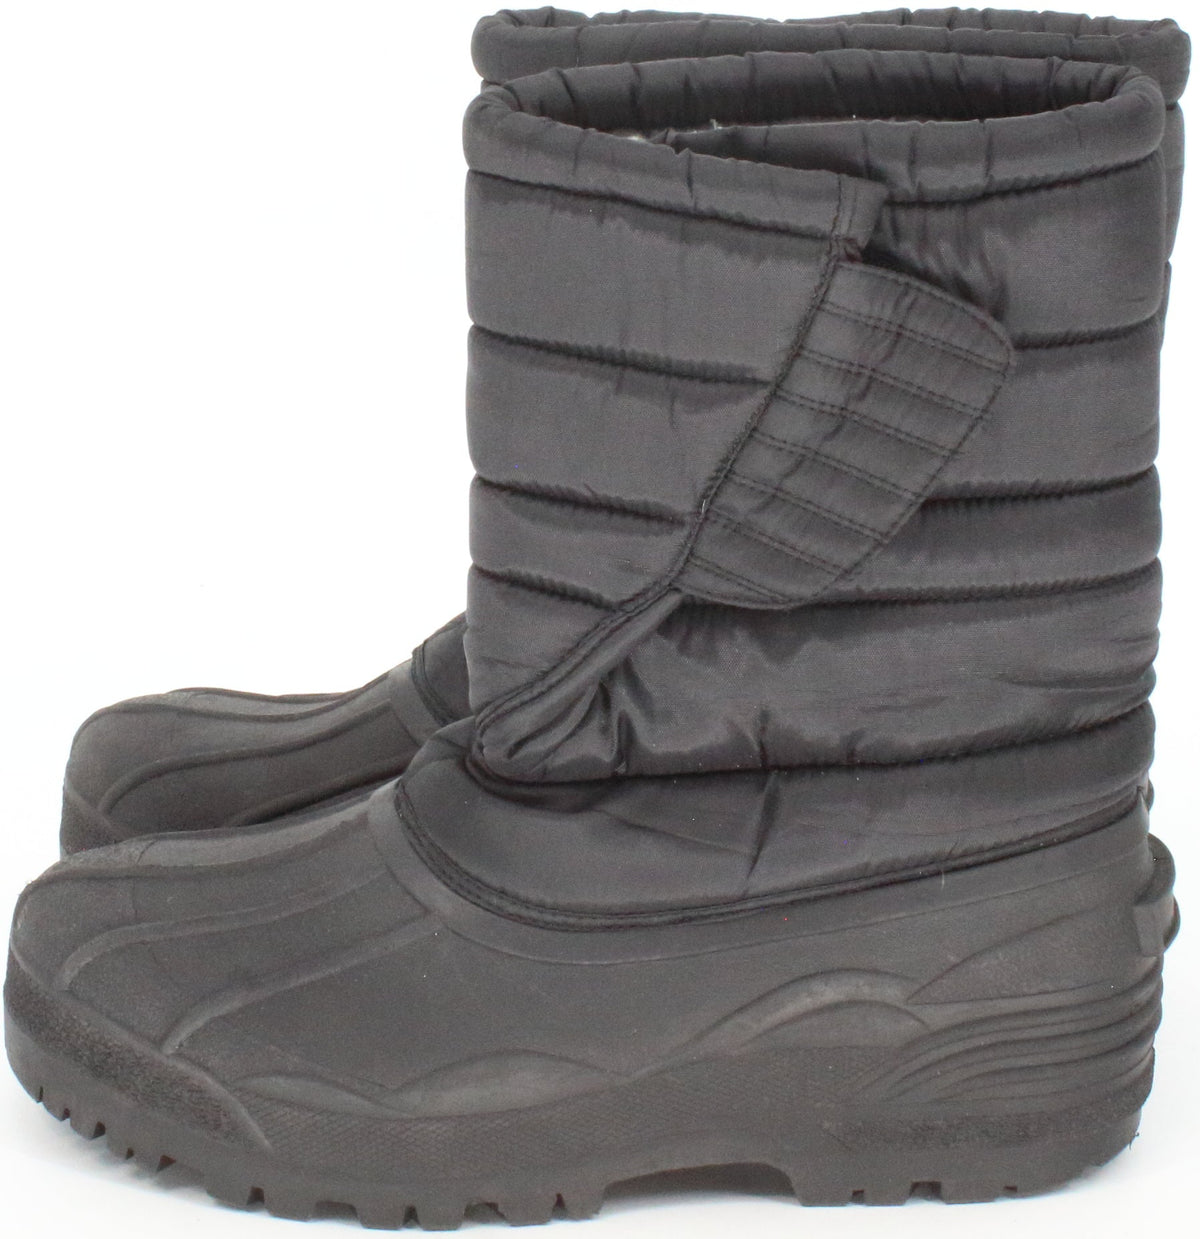 Black Men's Snow Boots